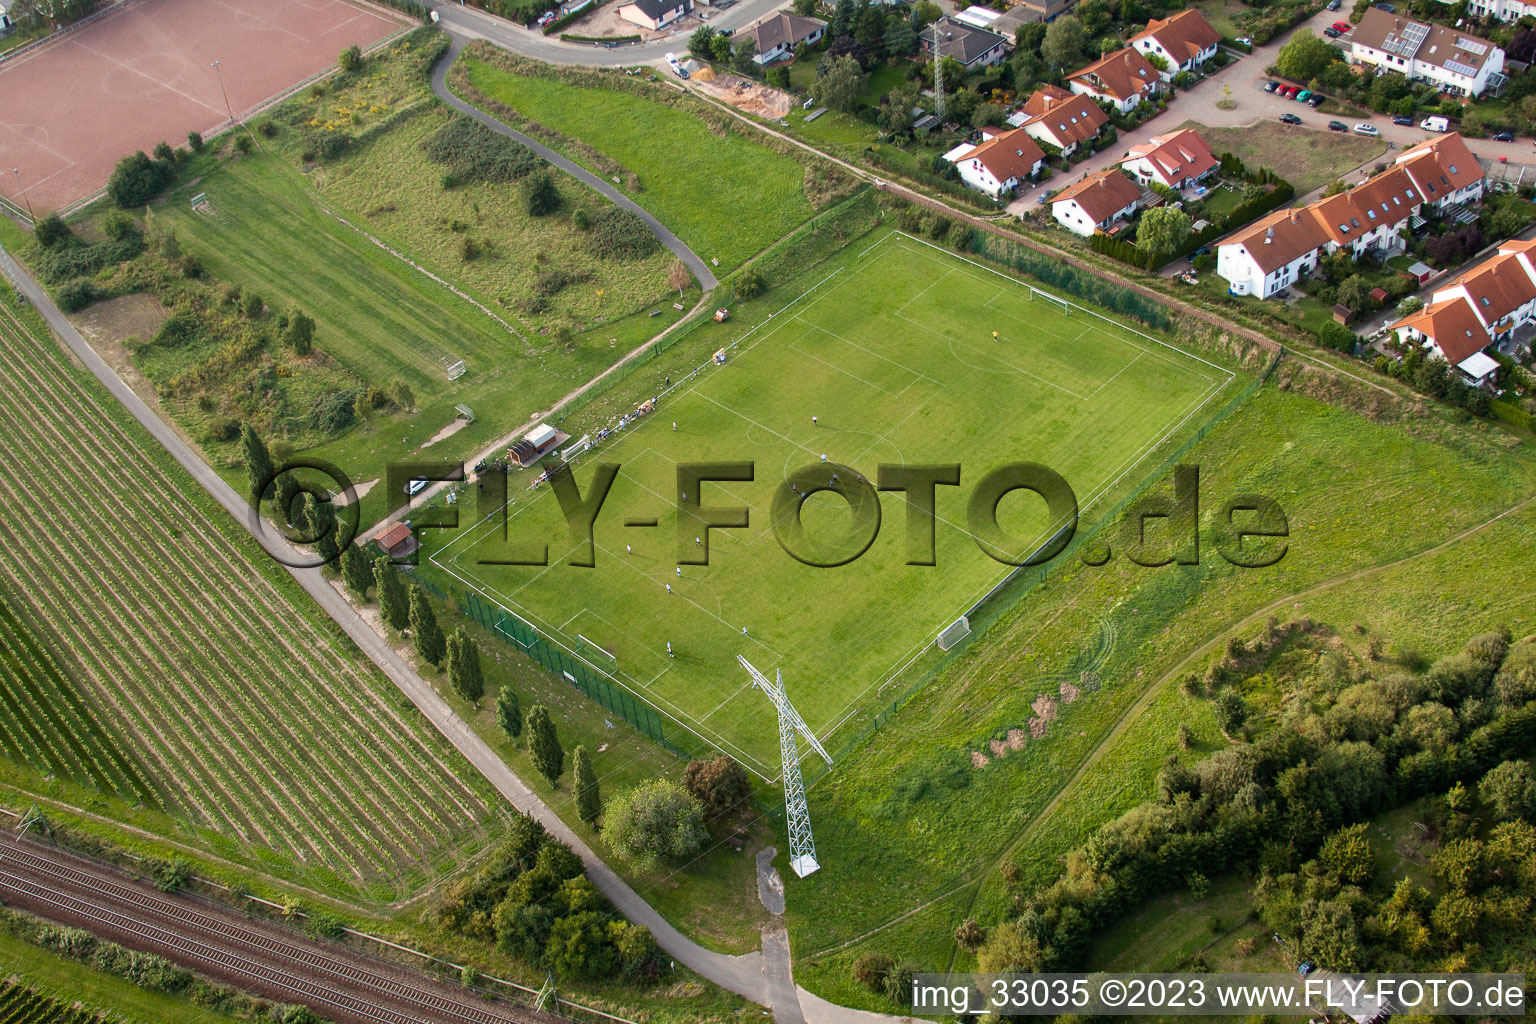 Vue aérienne de Sur la Weinstrasse, terrain de sport à le quartier Mußbach in Neustadt an der Weinstraße dans le département Rhénanie-Palatinat, Allemagne